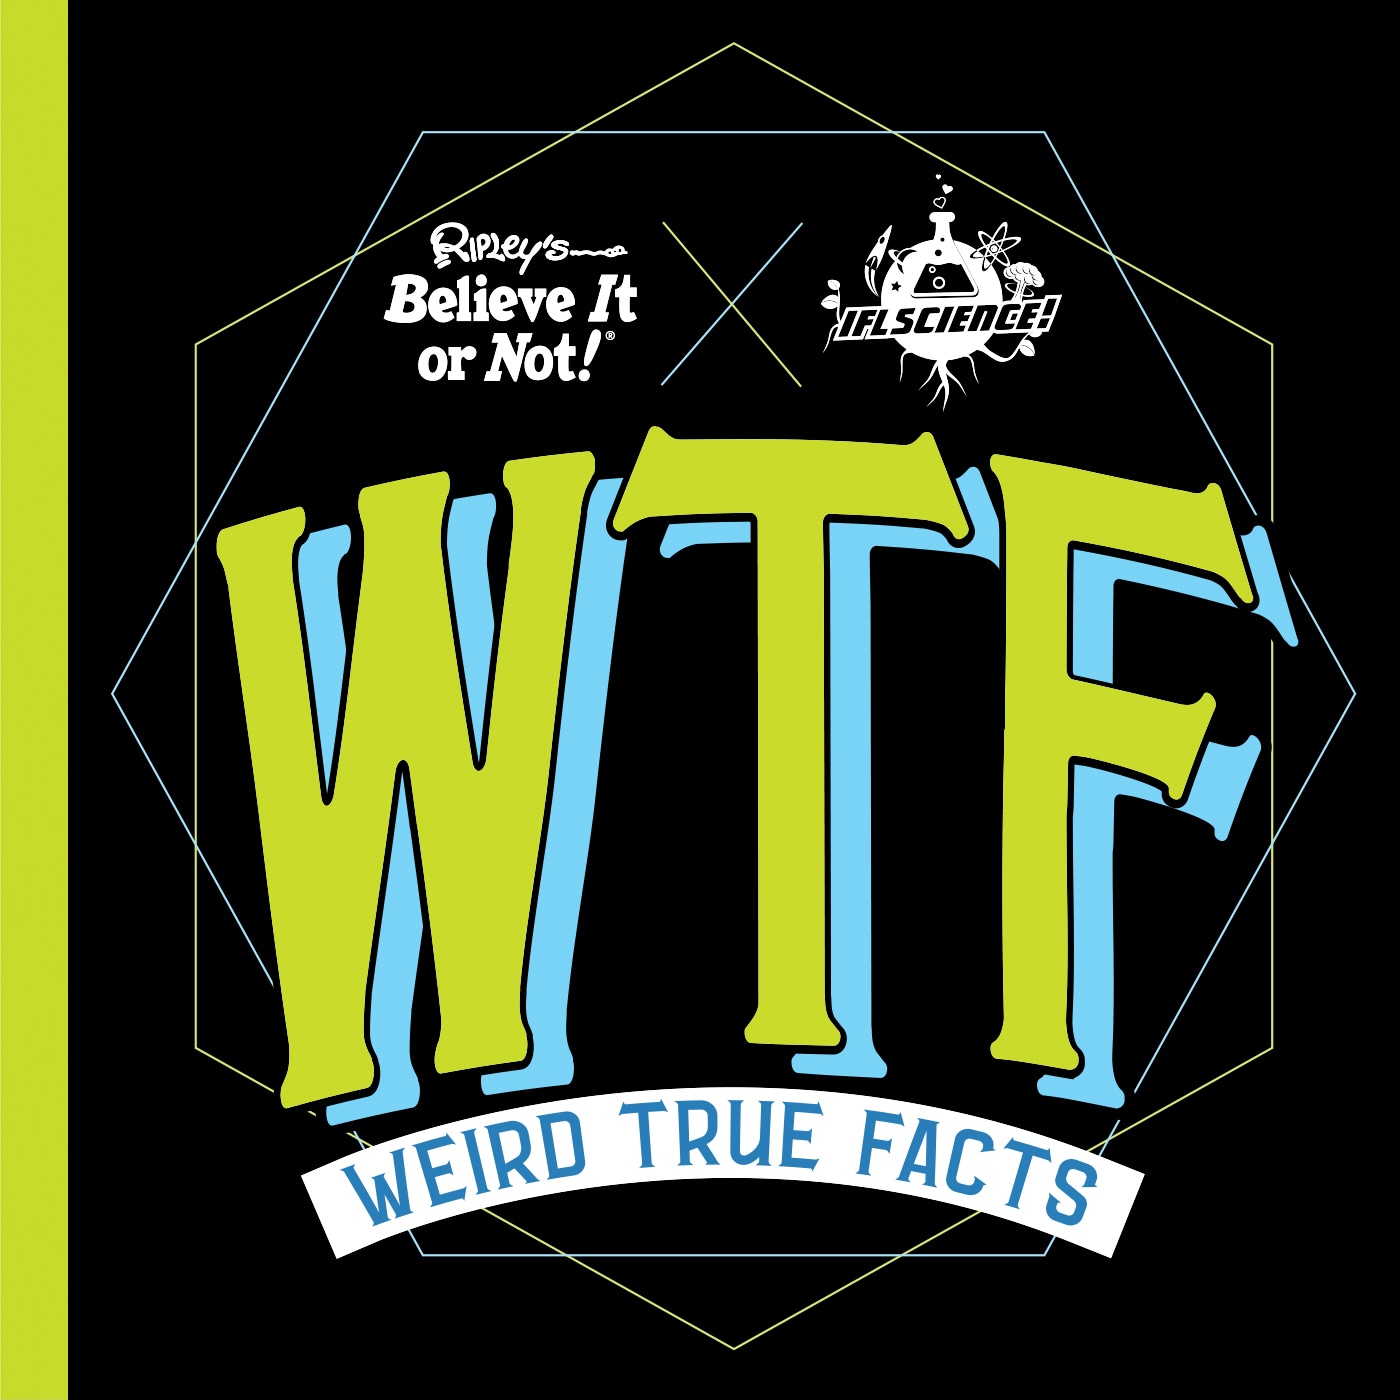 Book “Ripley's Believe It or Not! Weird True Facts” by Ripley — July 23, 2020